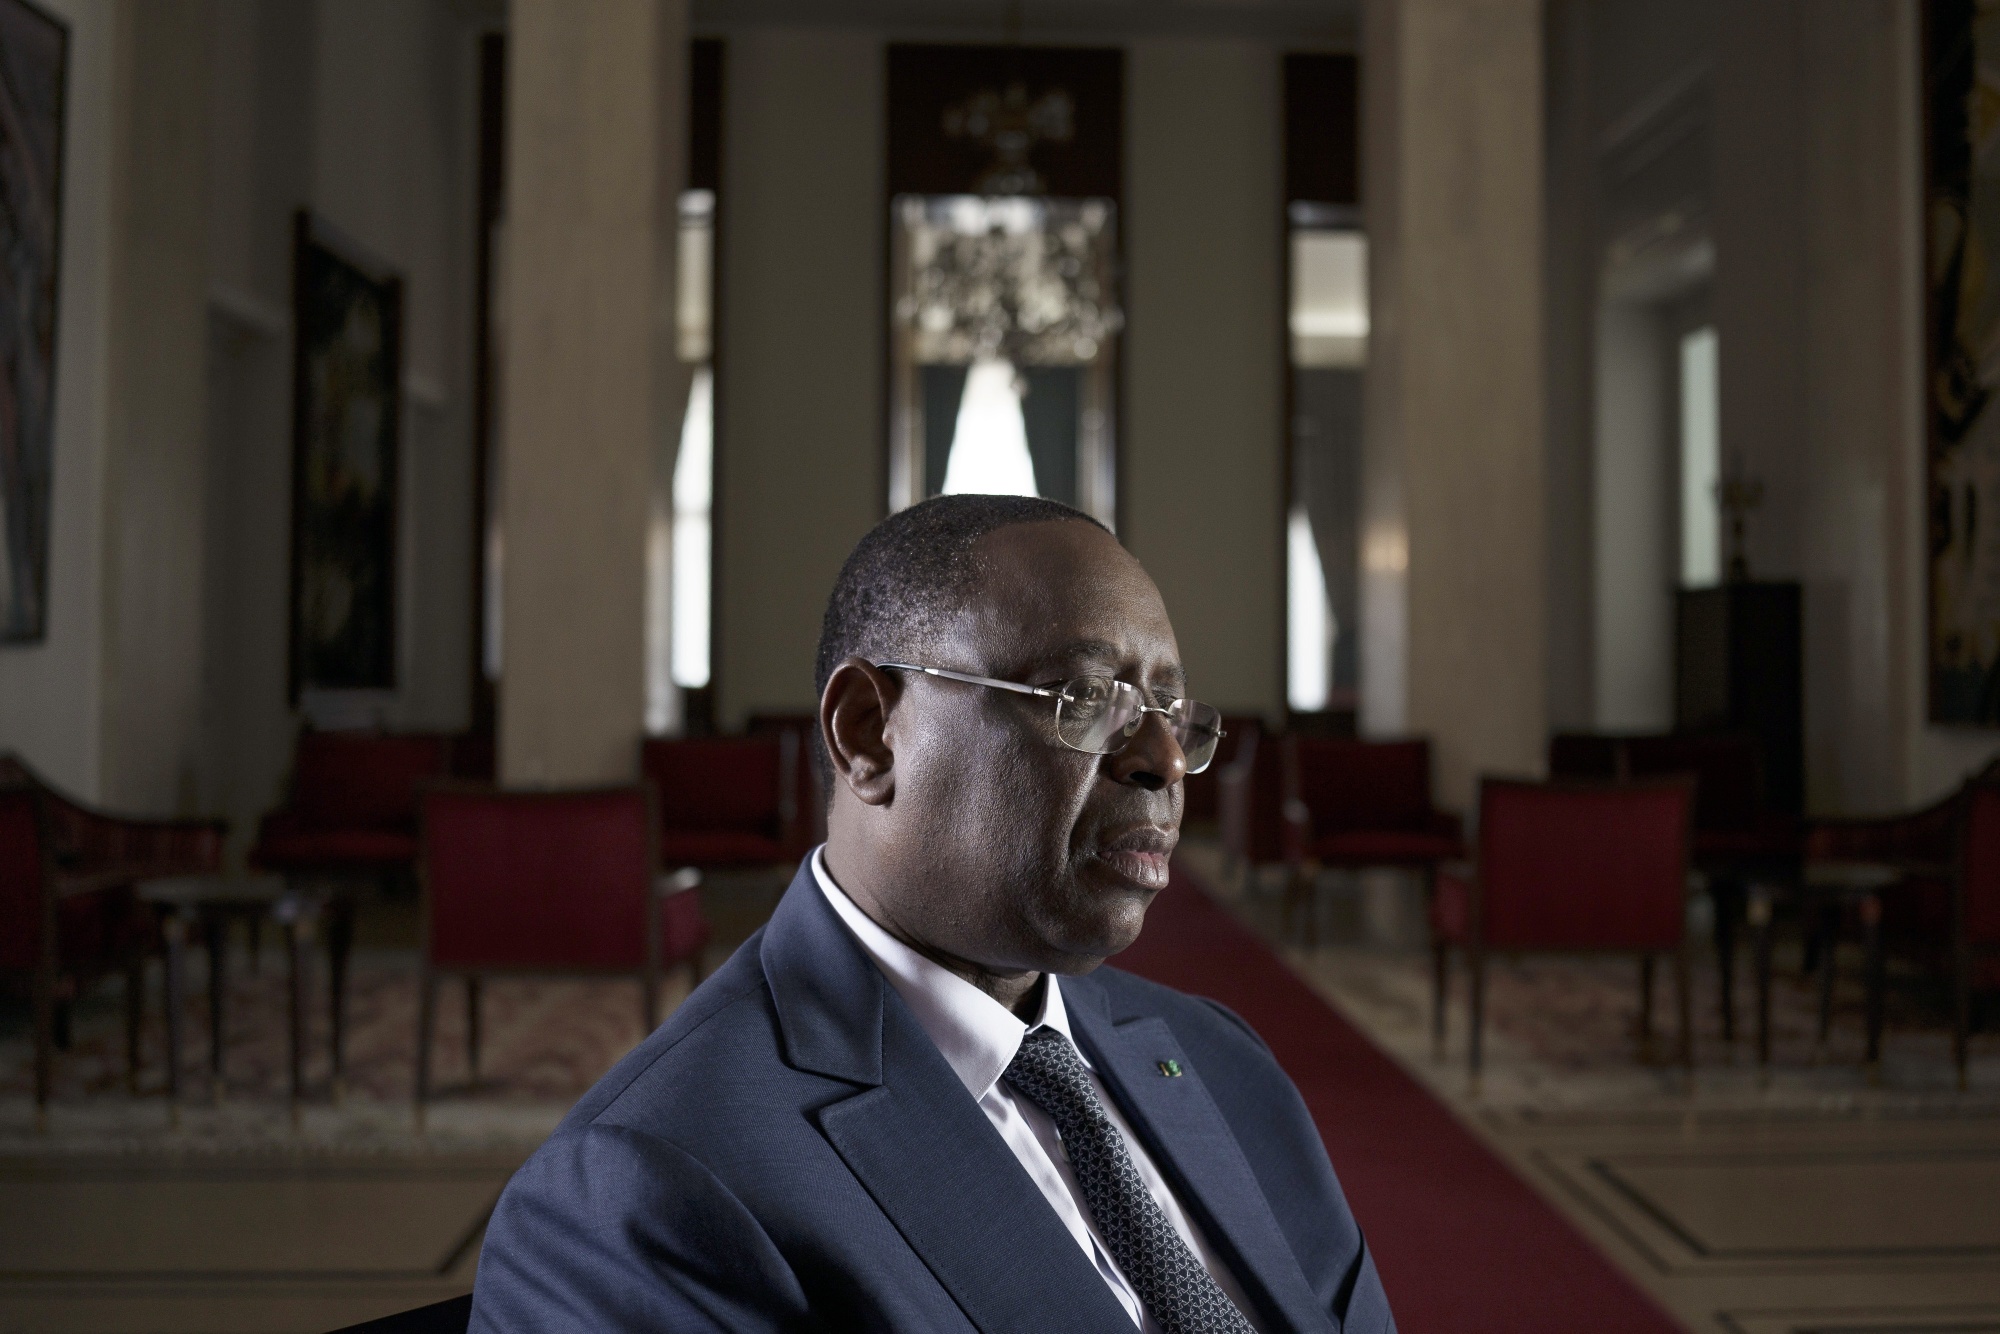 Report de la Présidentielle: Macky Sall reconnait que "ce fût une expérience difficile"